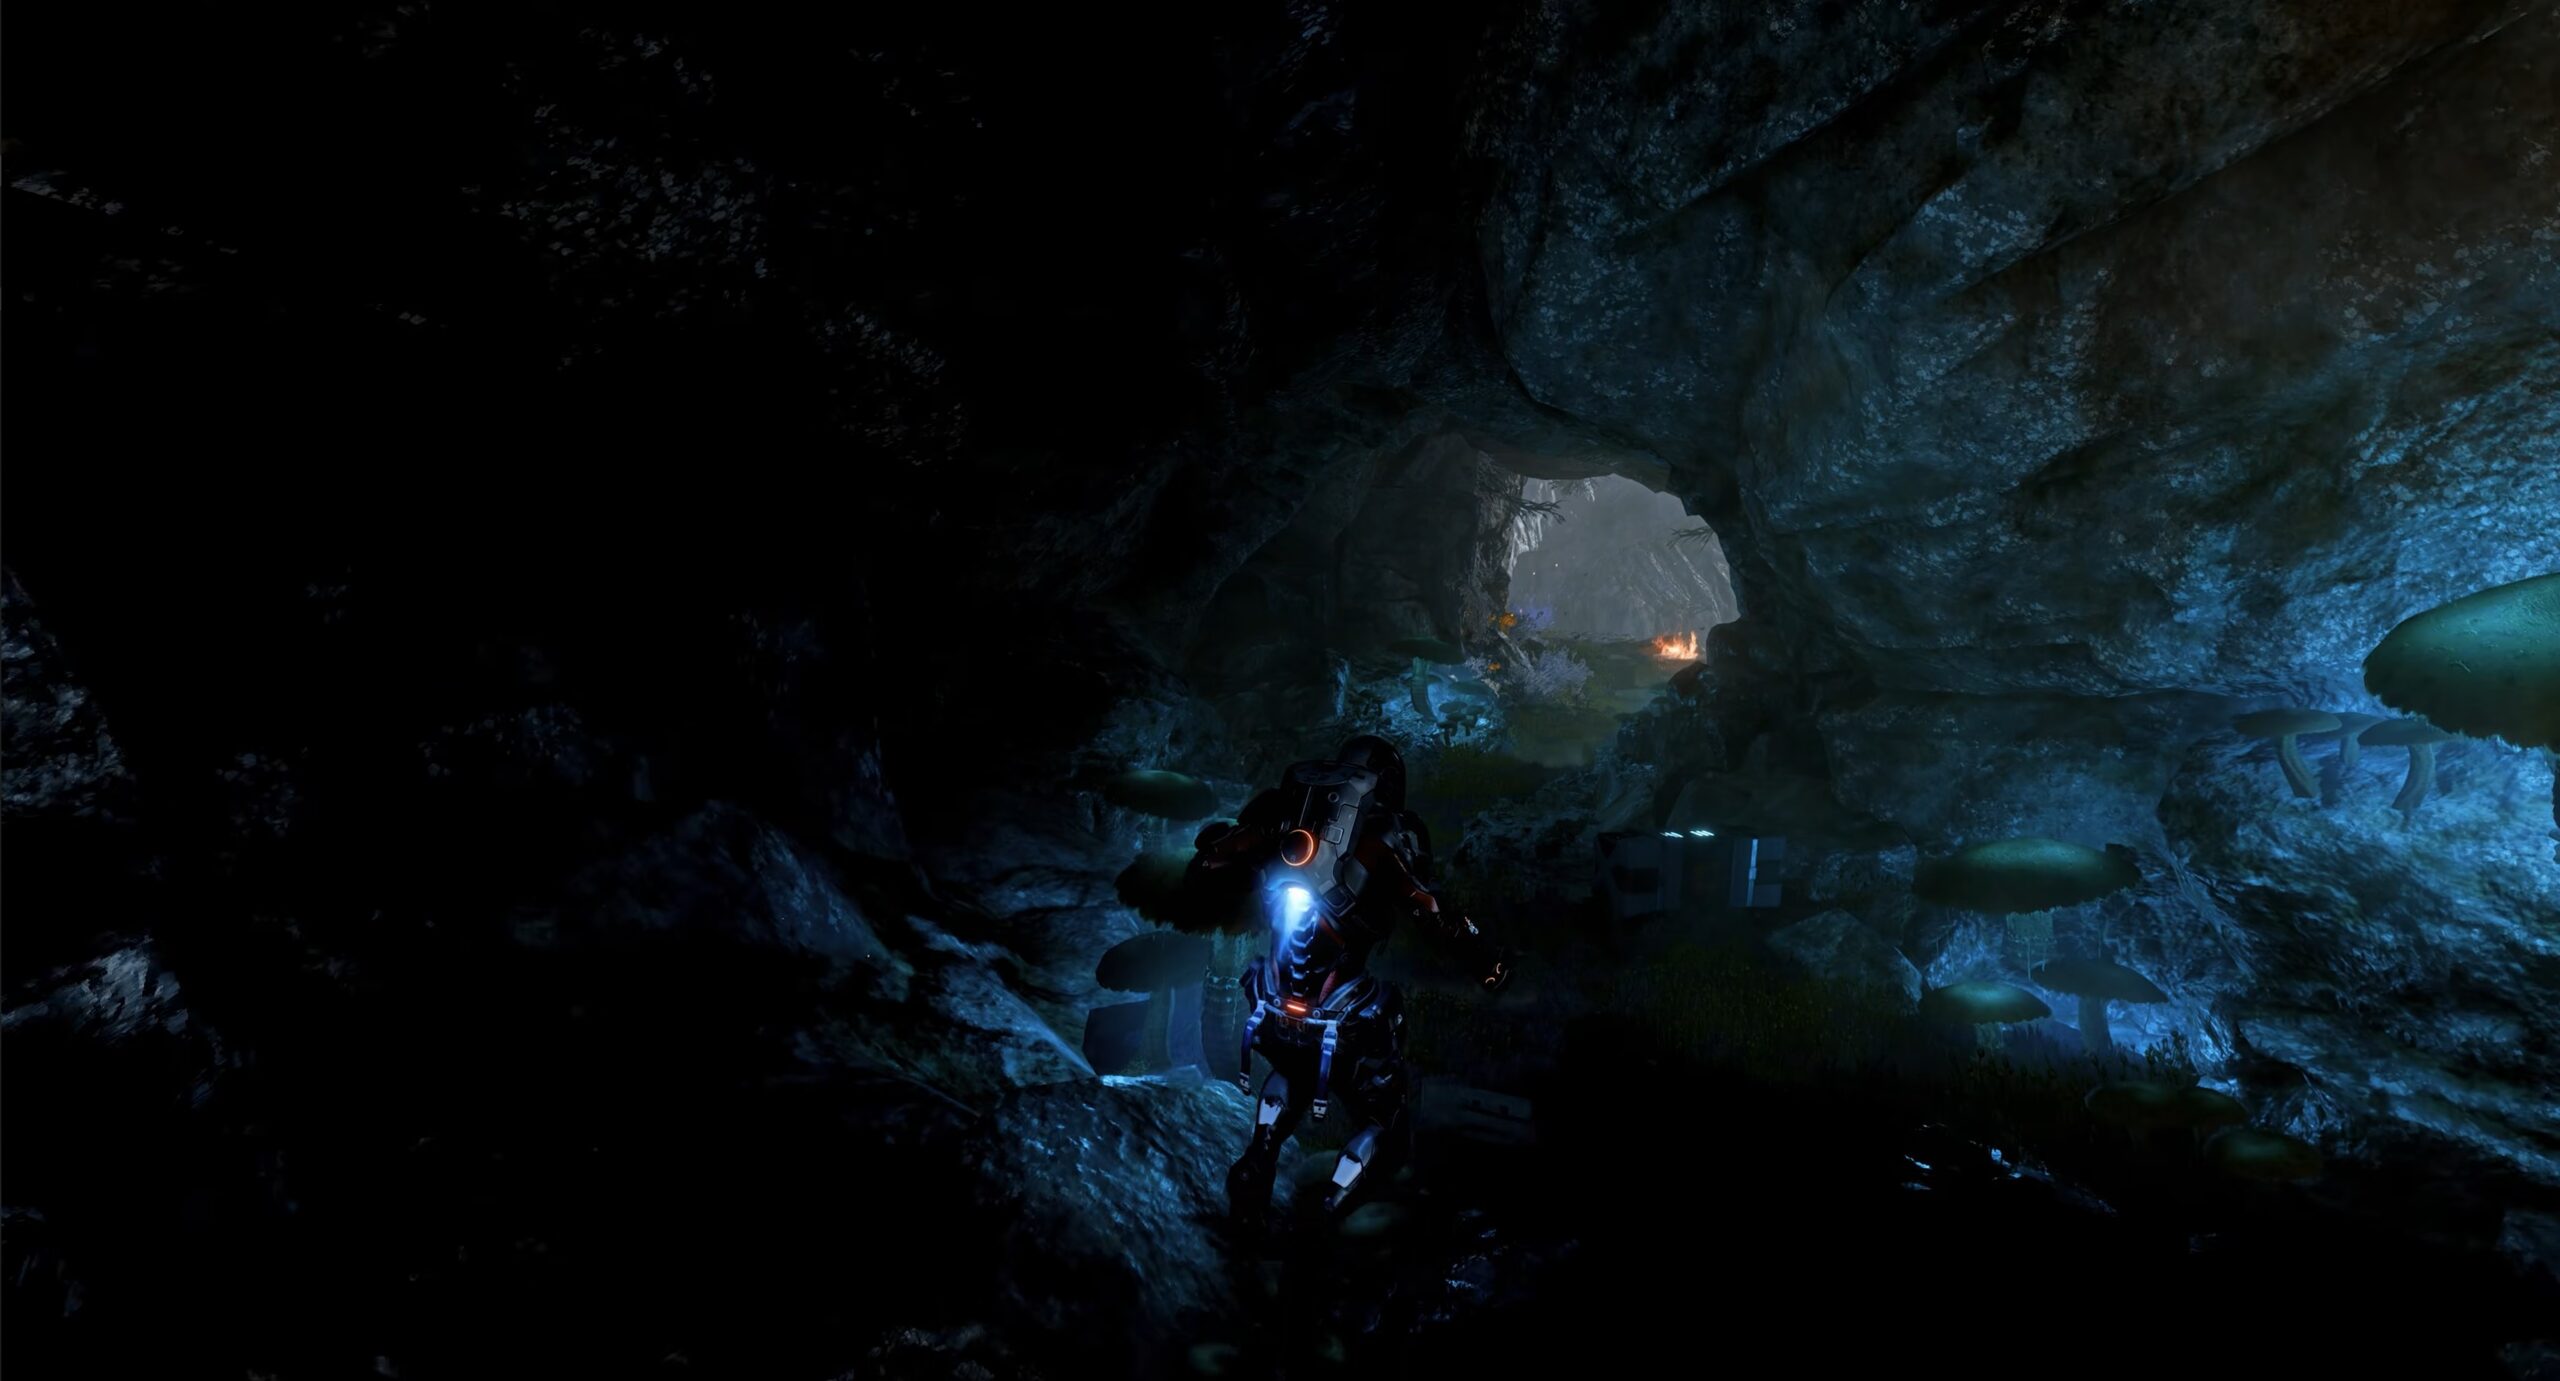 La nouvelle vidéo 8K de Mass Effect Andromeda montre le jeu en cours d’exécution avec un préréglage de traçage de rayons au-delà de toutes les limites